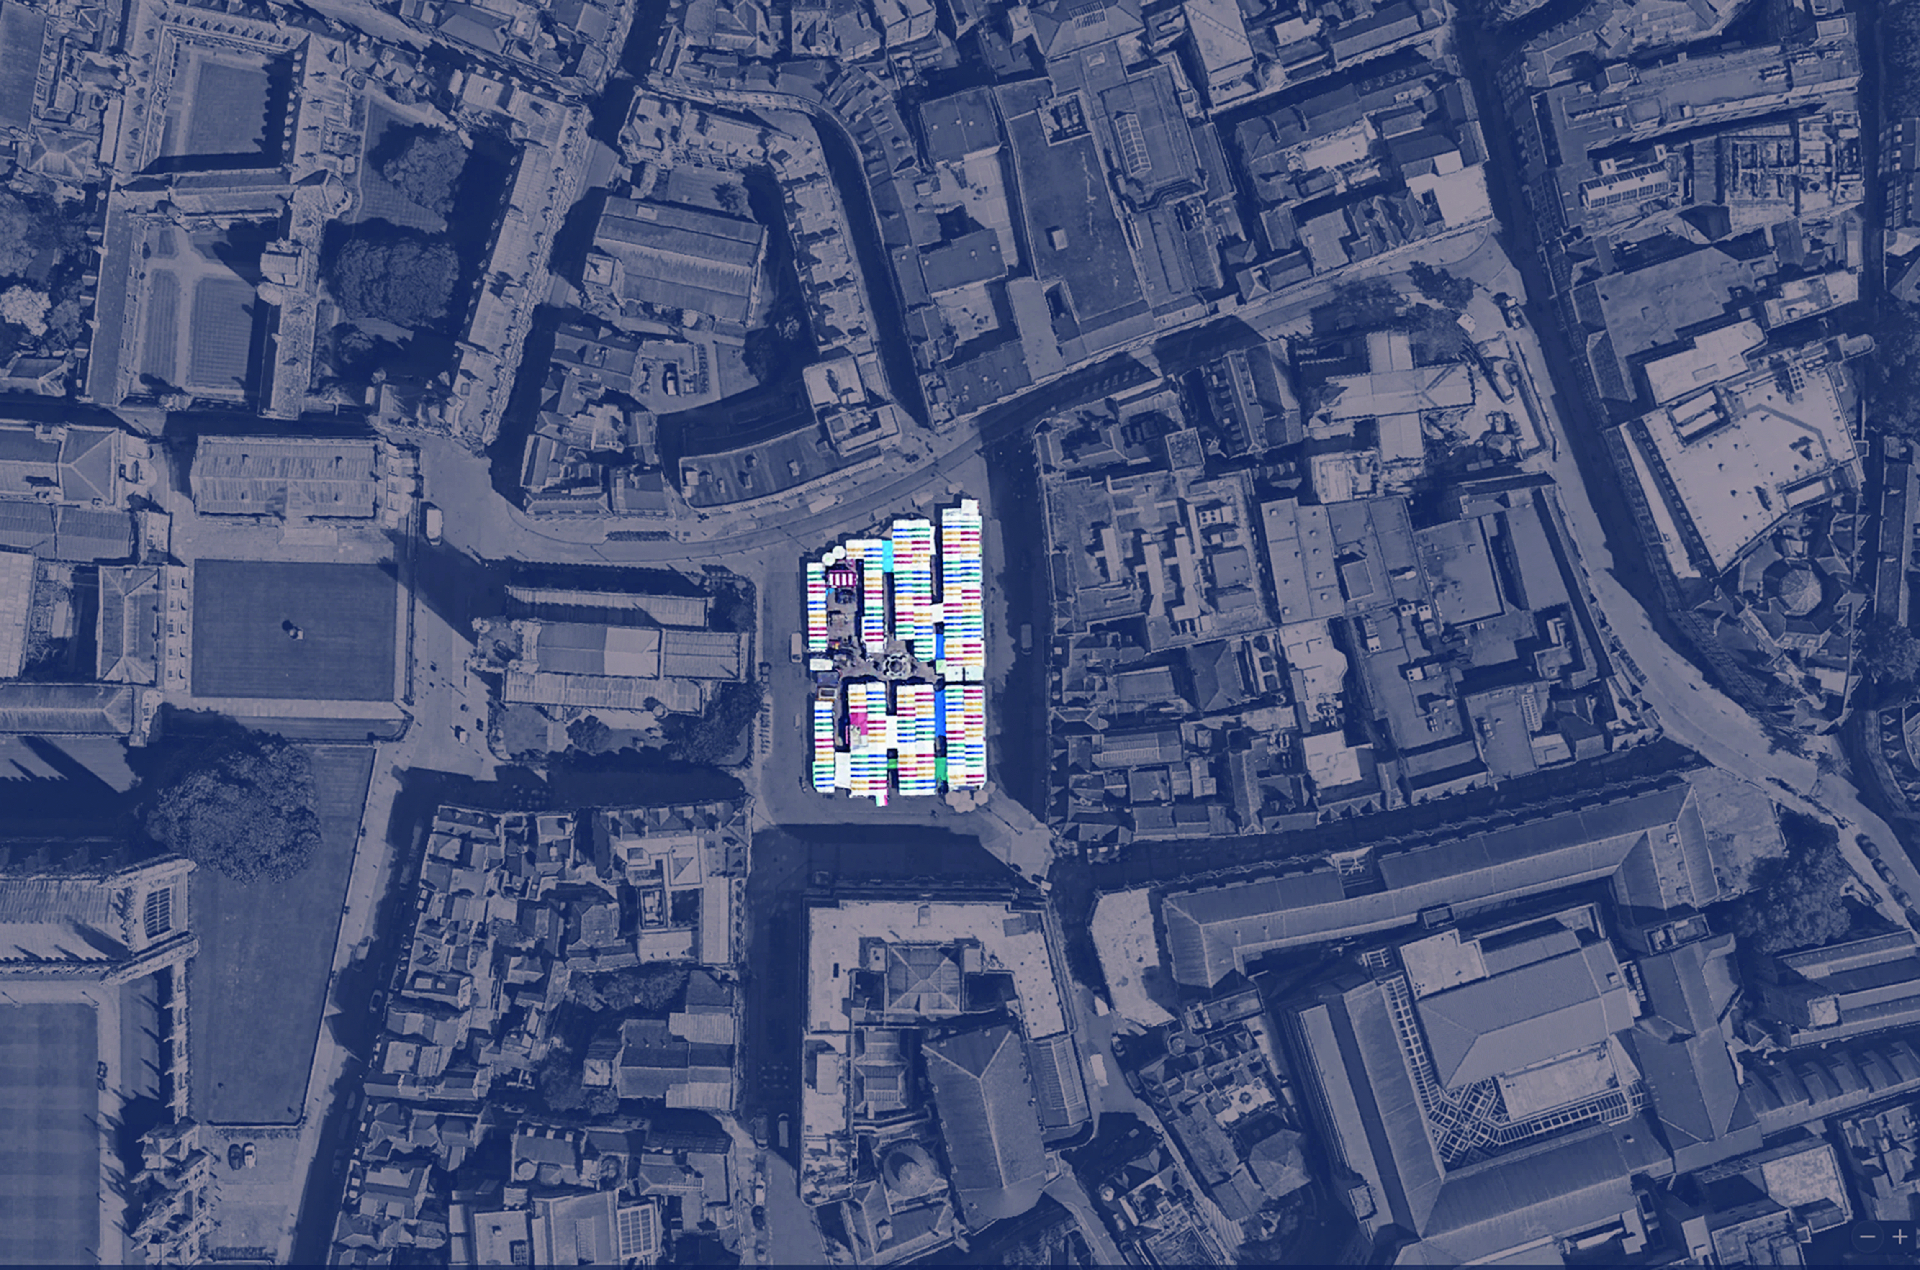 Aerial view of Market Square, Cambridge